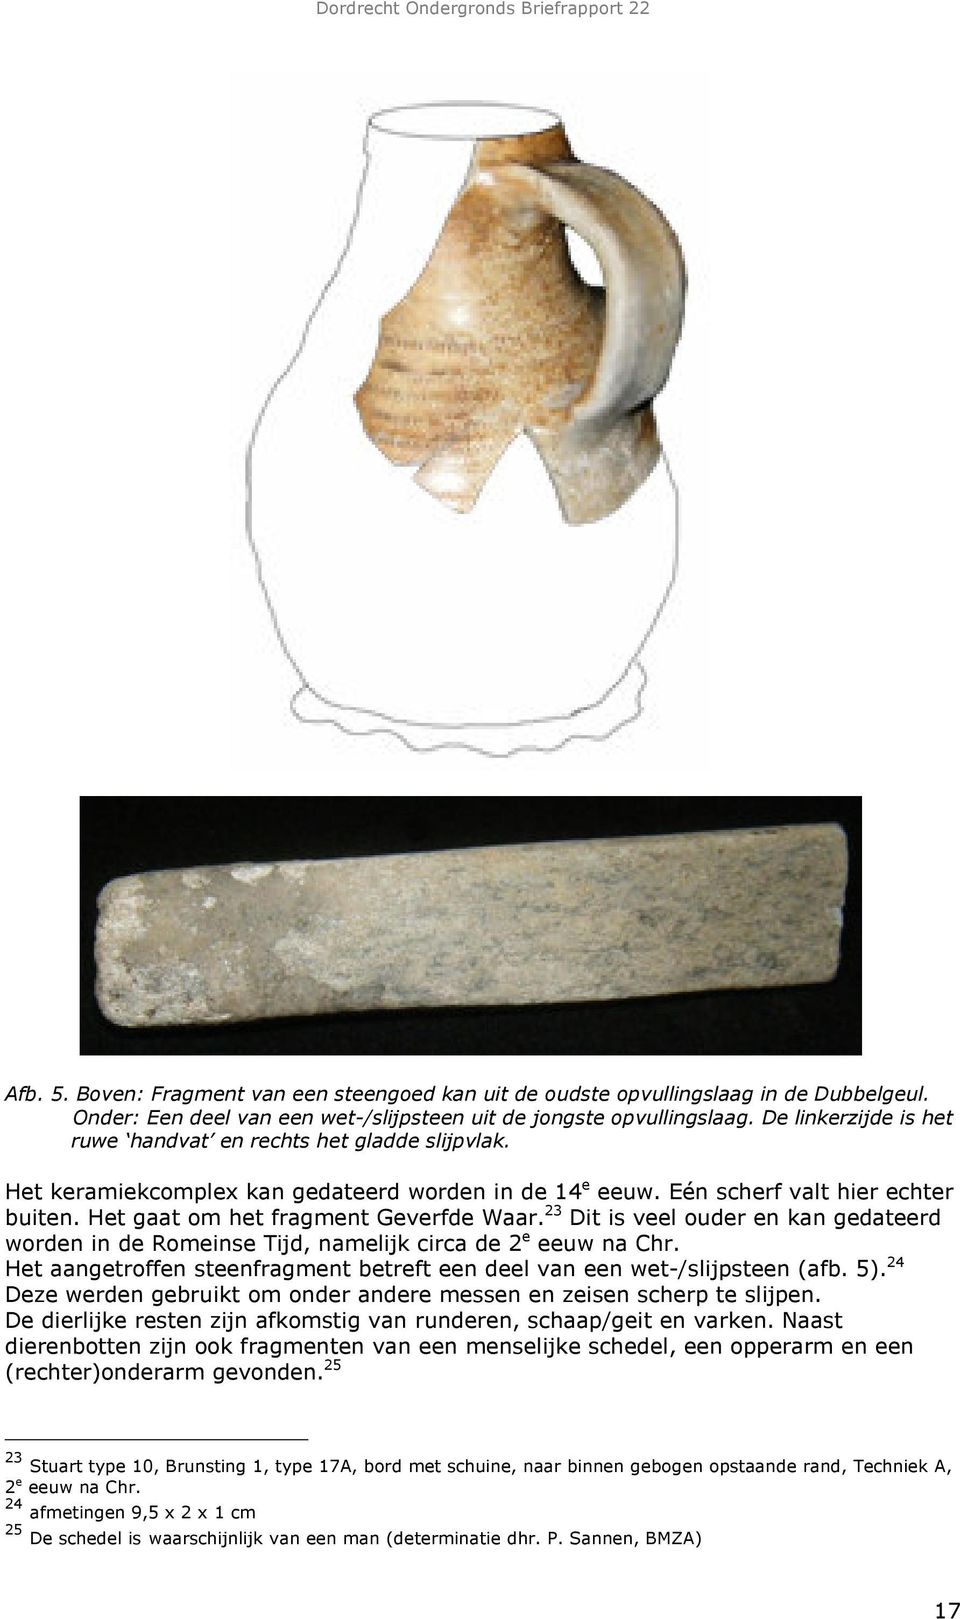 23 Dit is veel ouder en kan gedateerd worden in de Romeinse Tijd, namelijk circa de 2 e eeuw na Chr. Het aangetroffen steenfragment betreft een deel van een wet-/slijpsteen (afb. 5).